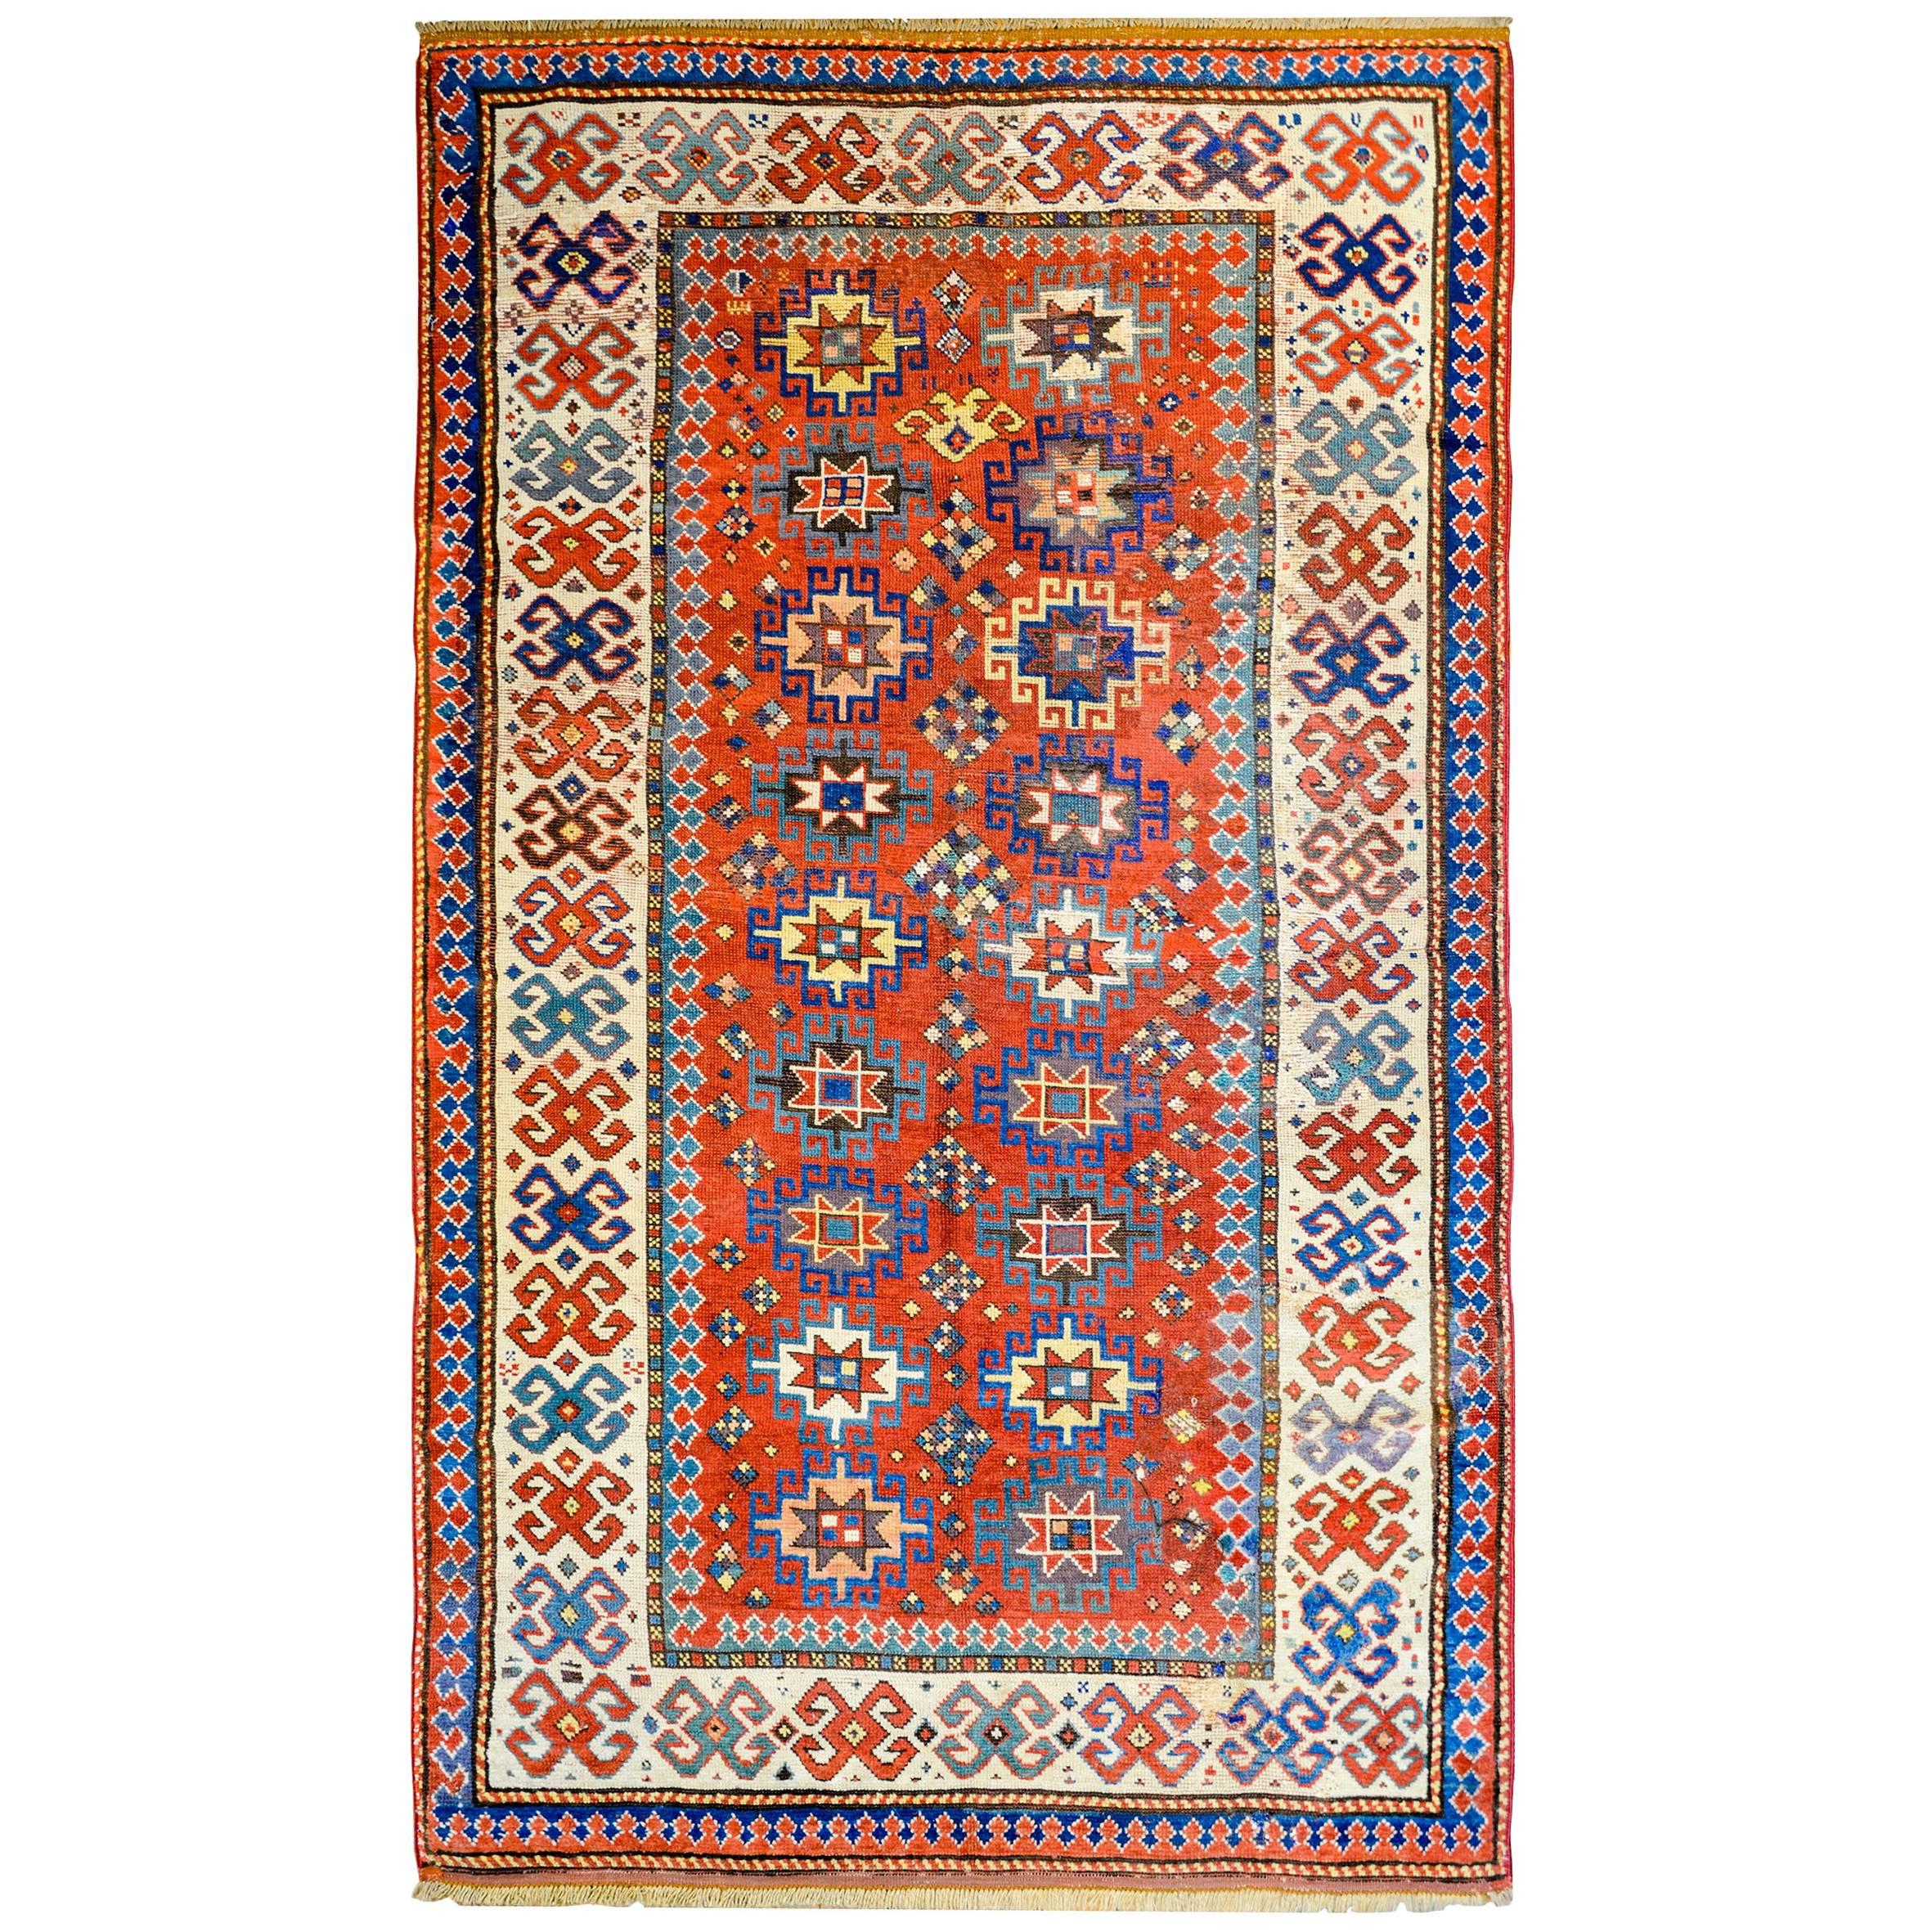 Hervorragender Lammfell-Teppich aus dem frühen 20. Jahrhundert aus kaukasisch-kaukasischem Kazak